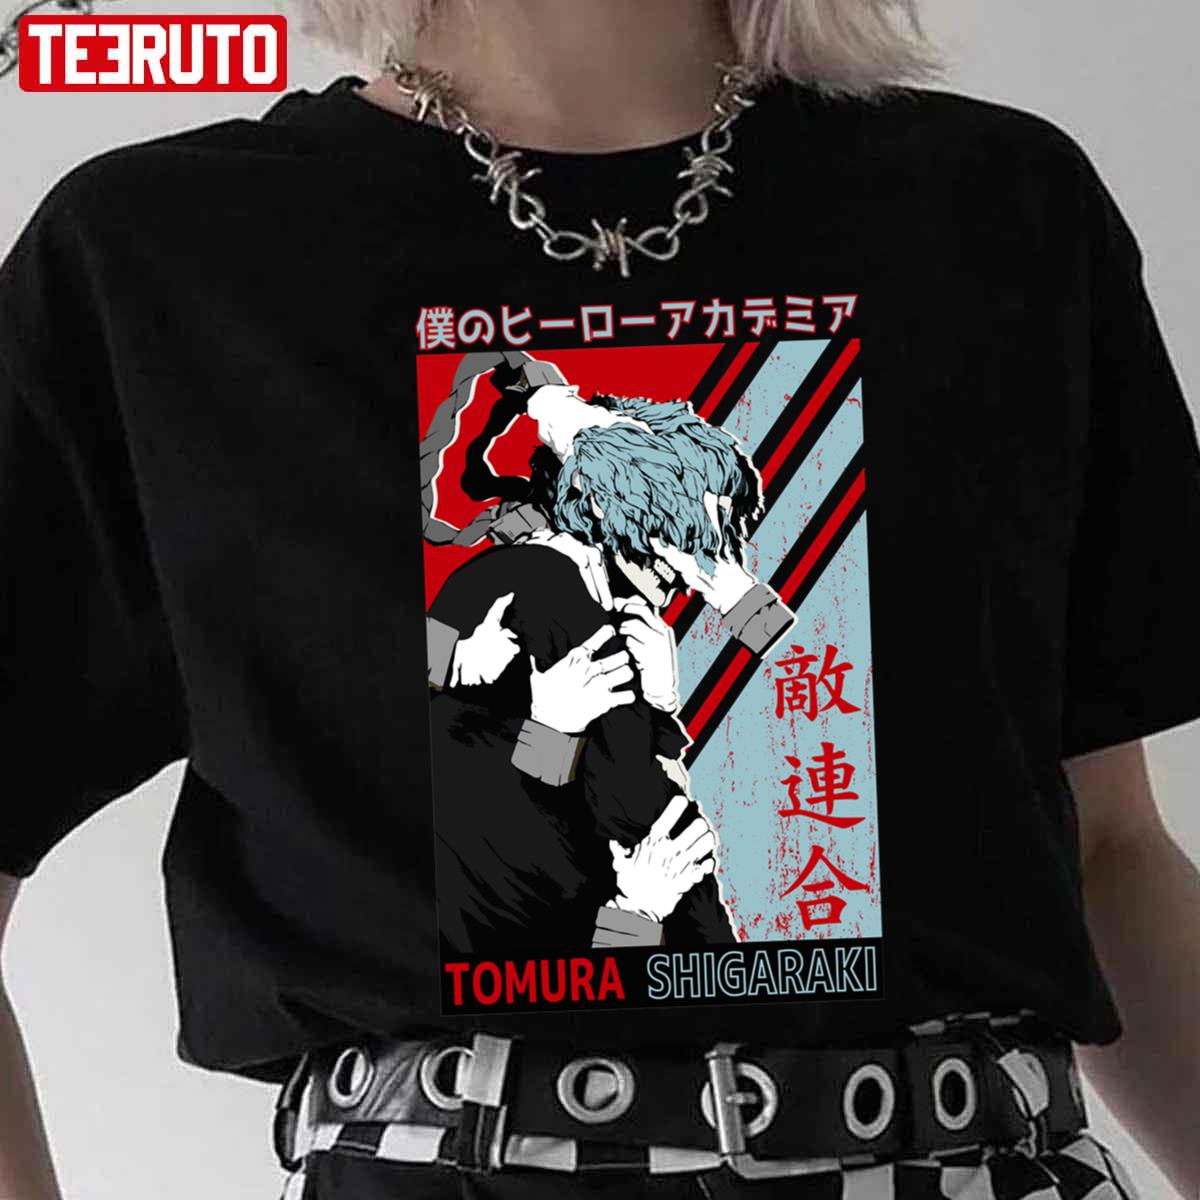 Tomura Shigaraki My Hero Academia Unisex T-Shirt - Teeruto